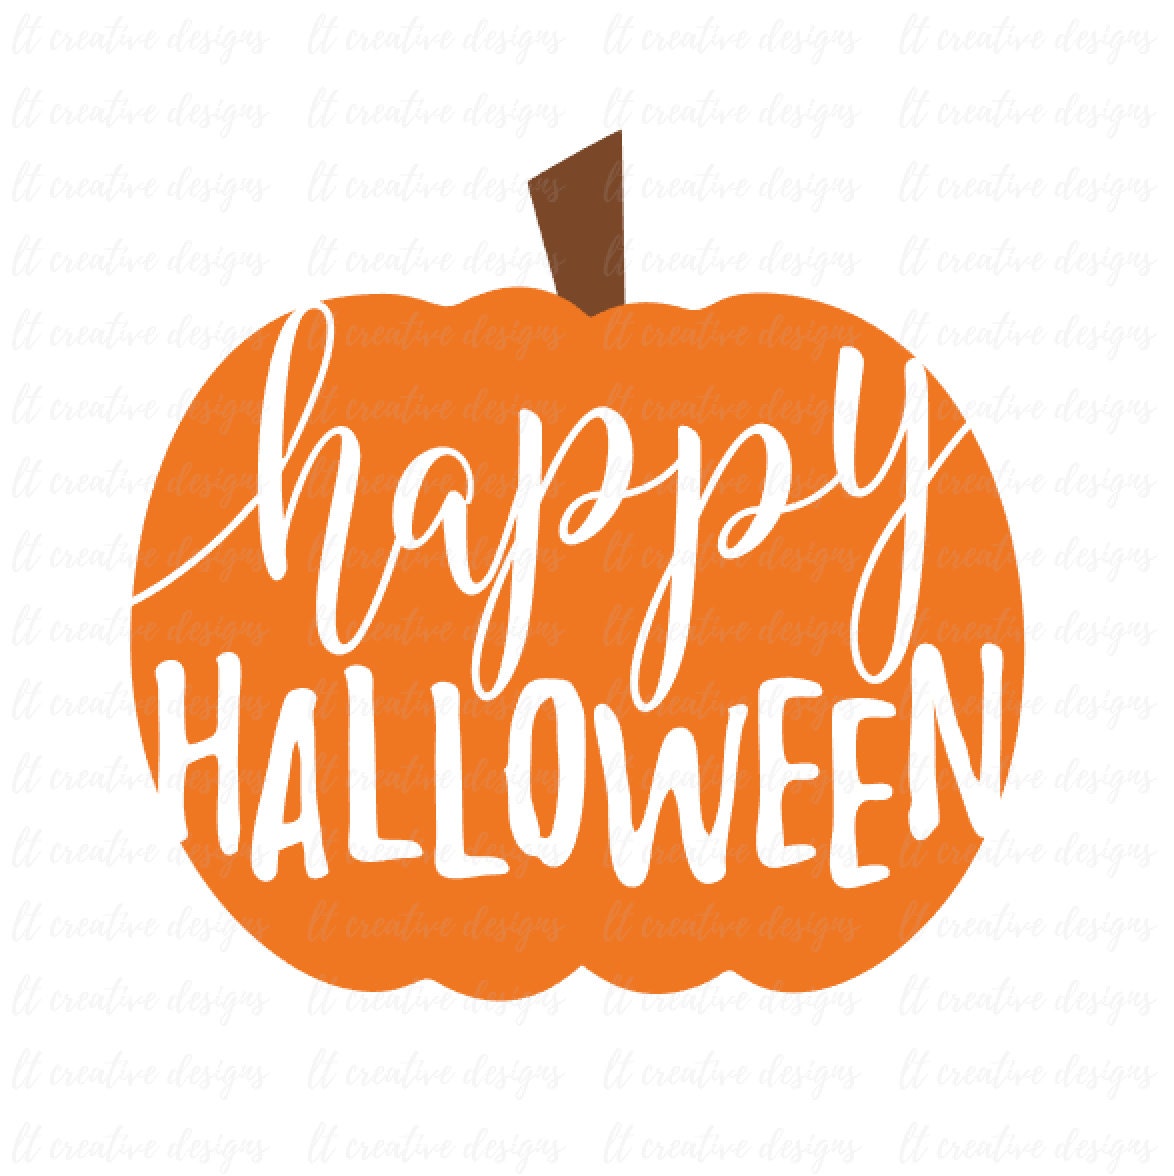 Download Happy Halloween SVG Pumpkin SVG Fall Pumpkin SVG Halloween